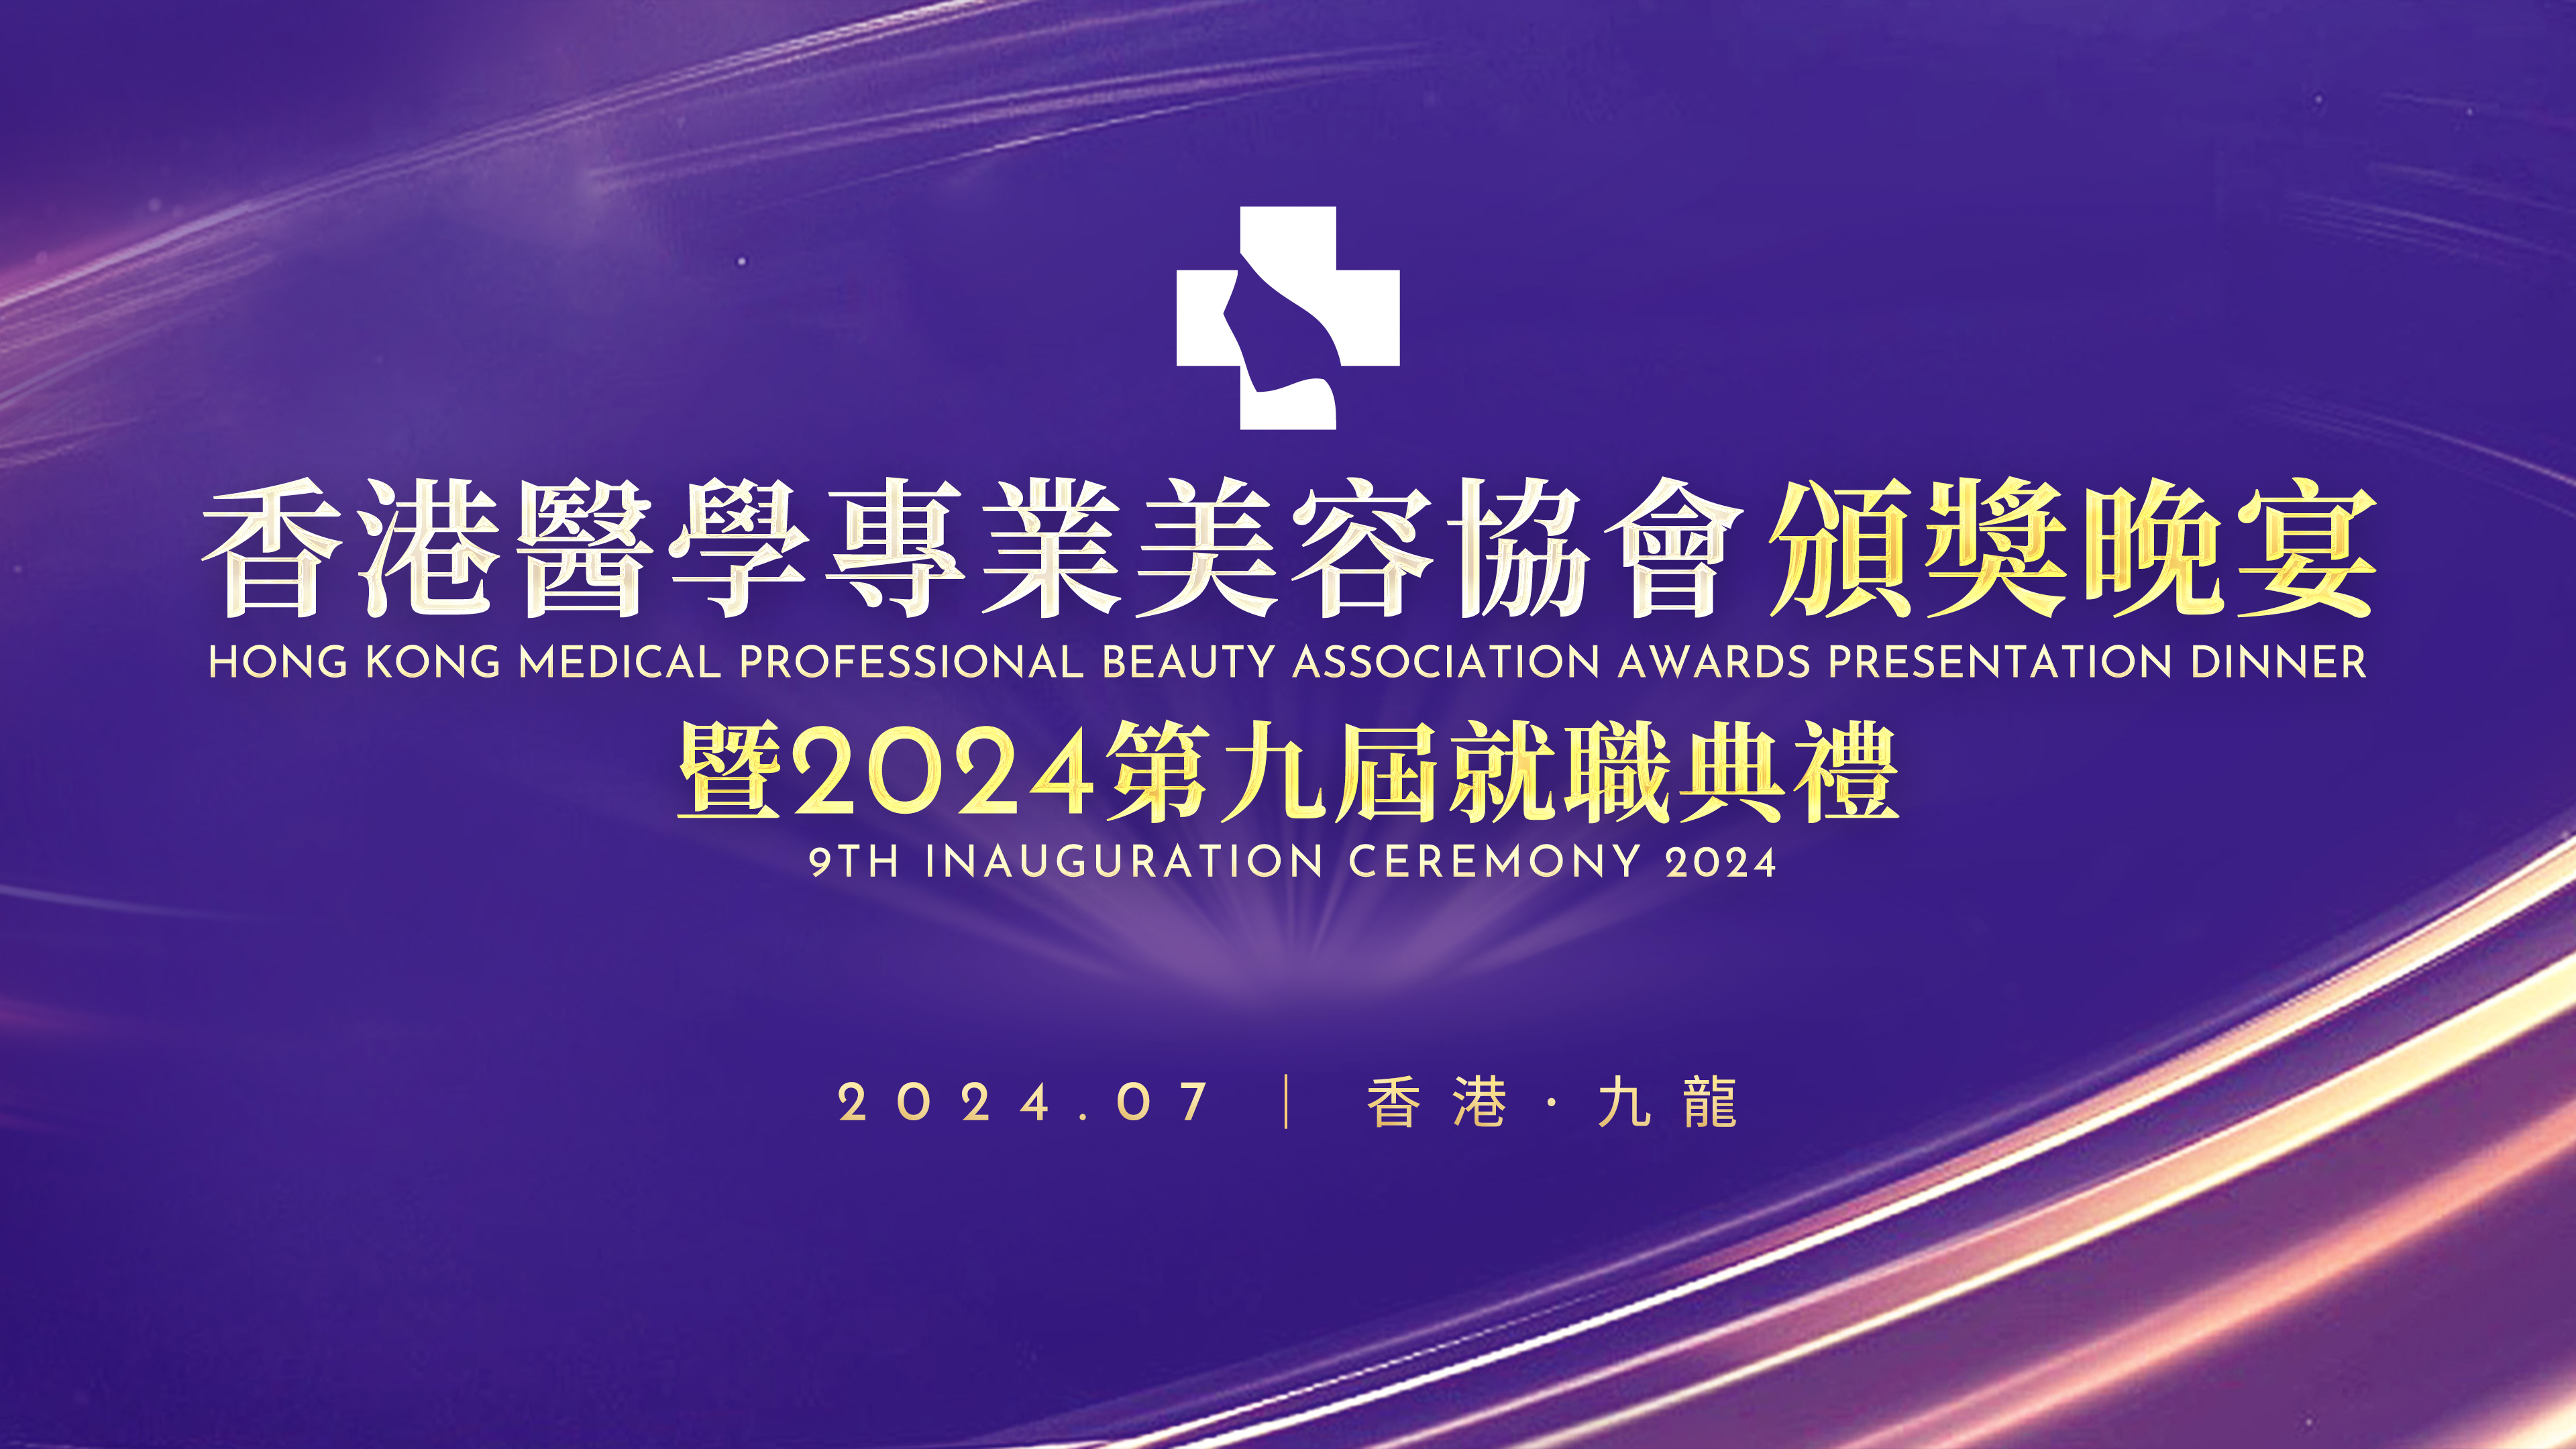 2024 香港医学专业美容协会颁奖晚宴暨第九届就职典礼